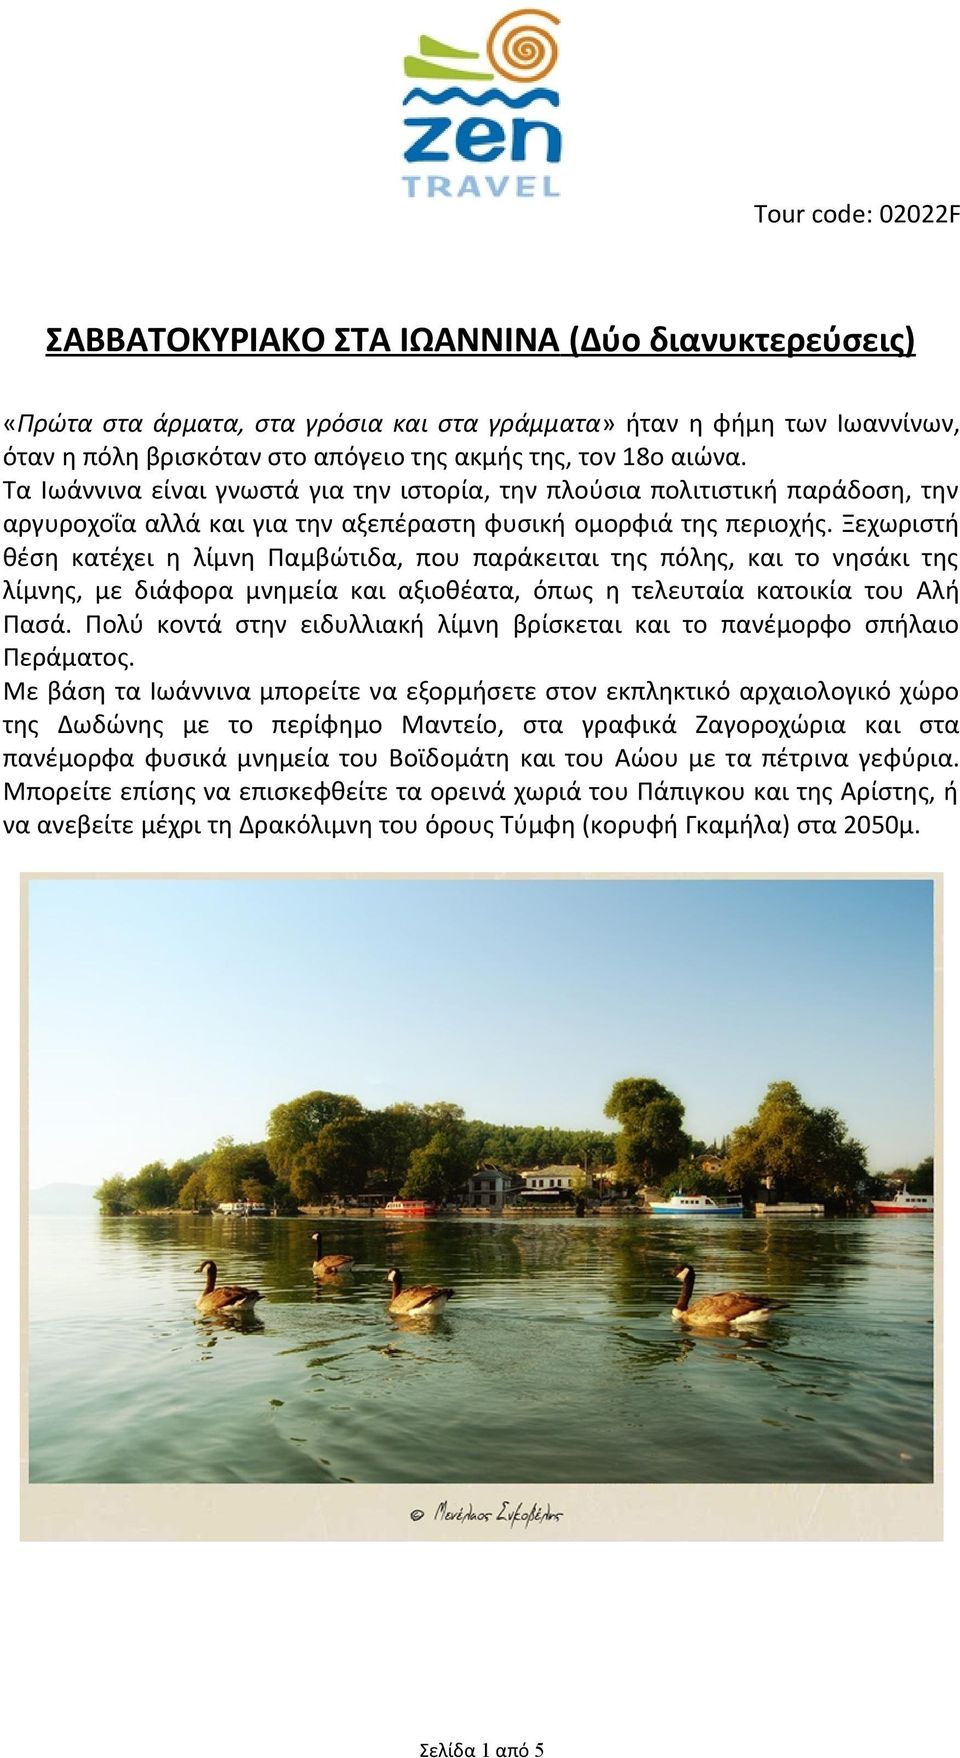 Ξεχωριστή θέση κατέχει η λίμνη Παμβώτιδα, που παράκειται της πόλης, και το νησάκι της λίμνης, με διάφορα μνημεία και αξιοθέατα, όπως η τελευταία κατοικία του Αλή Πασά.